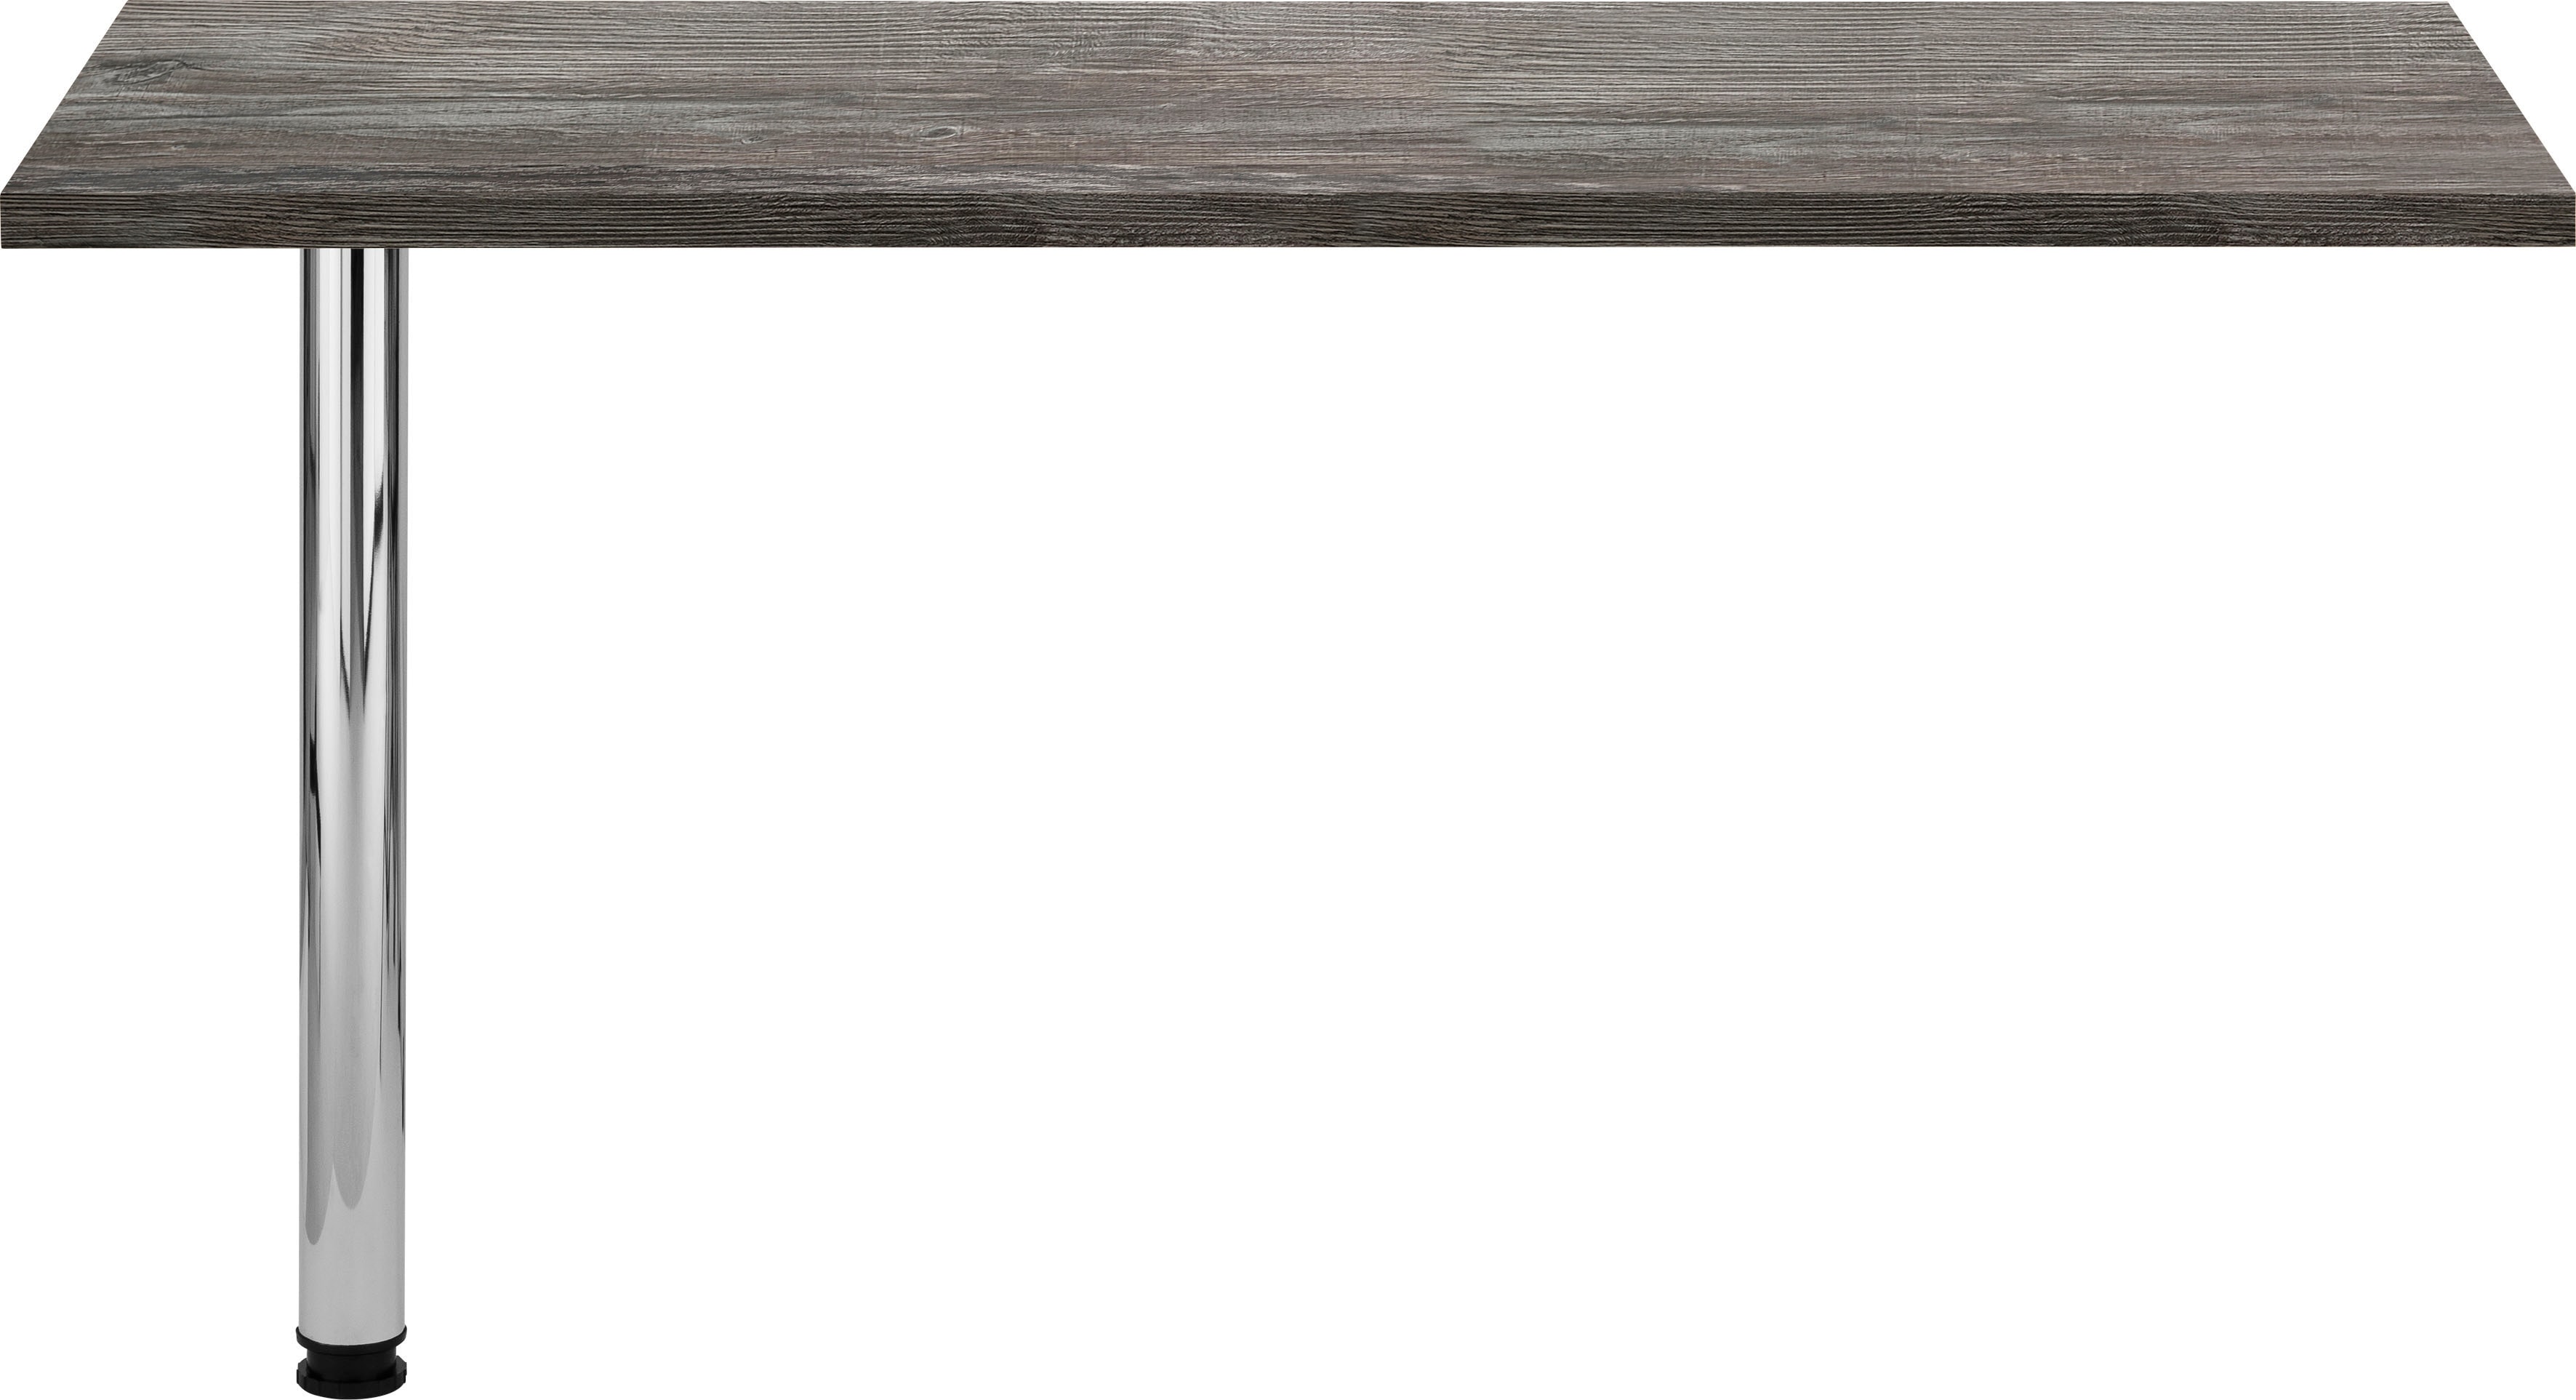 Tresentisch „Virginia“, 138 cm breit, ideal für kleine Küchen, eiche vintage B/H/T: 138 cm x 69 cm x 67 cm